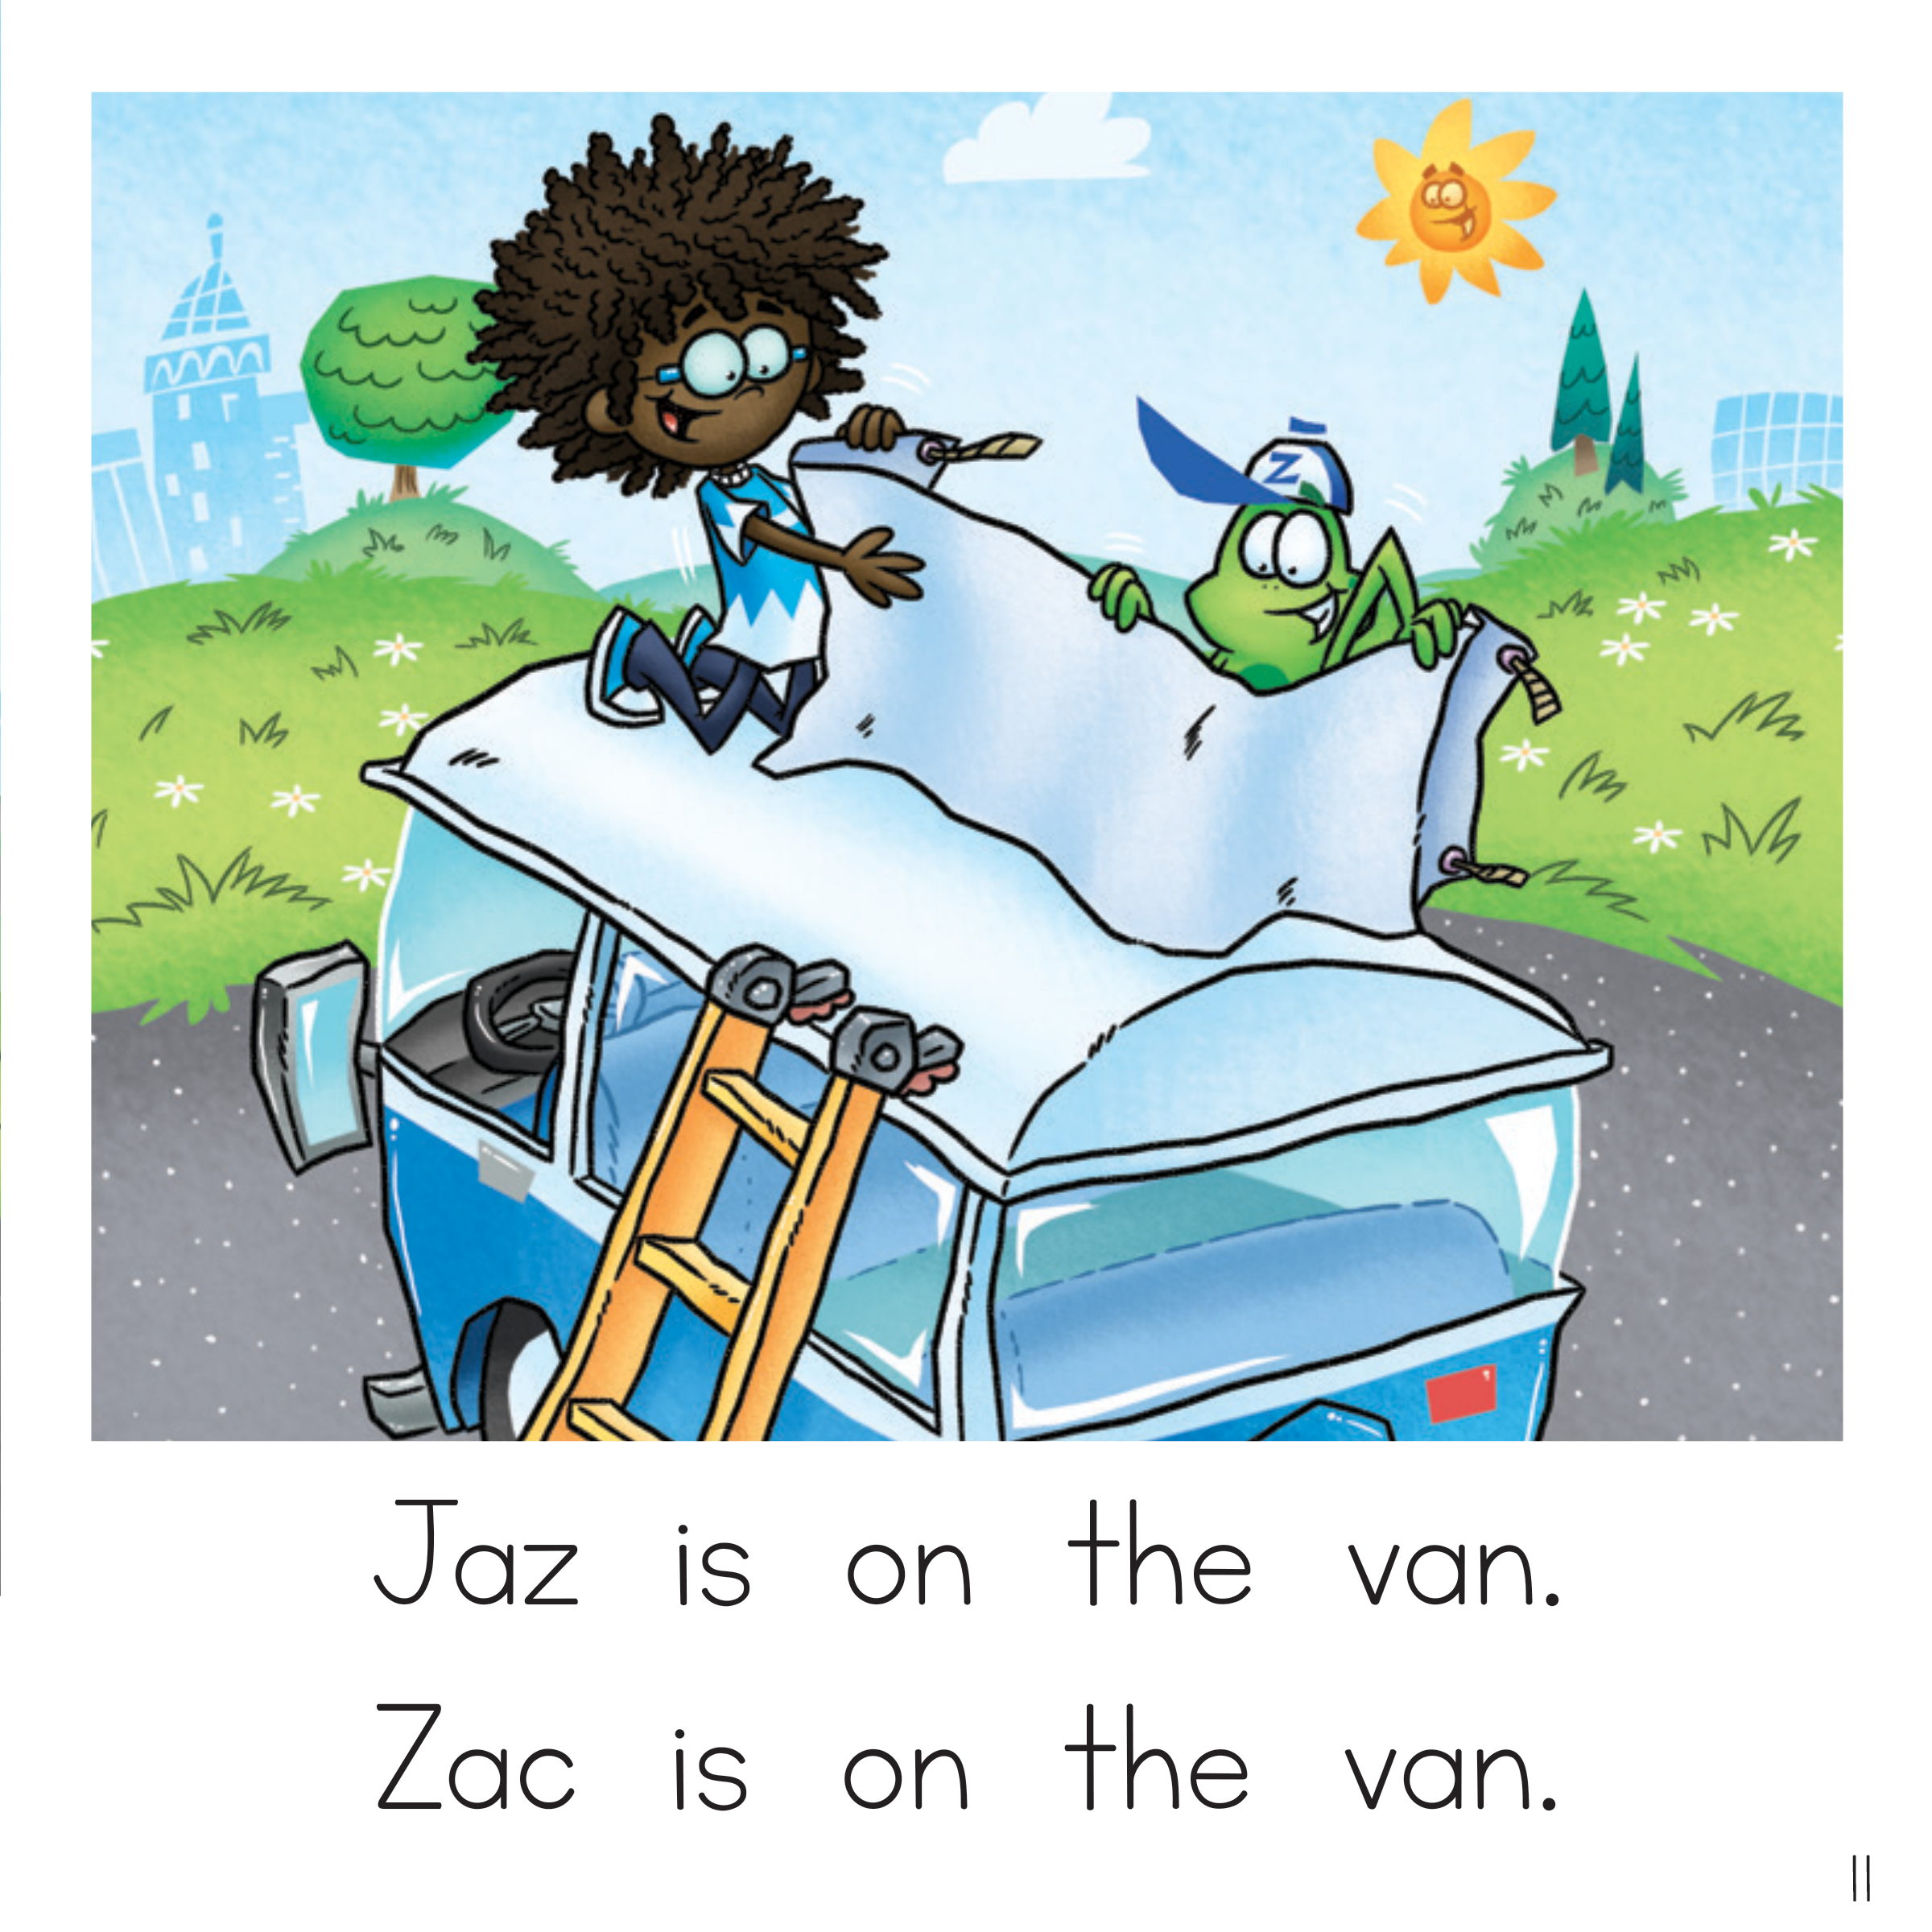 Zac's Van